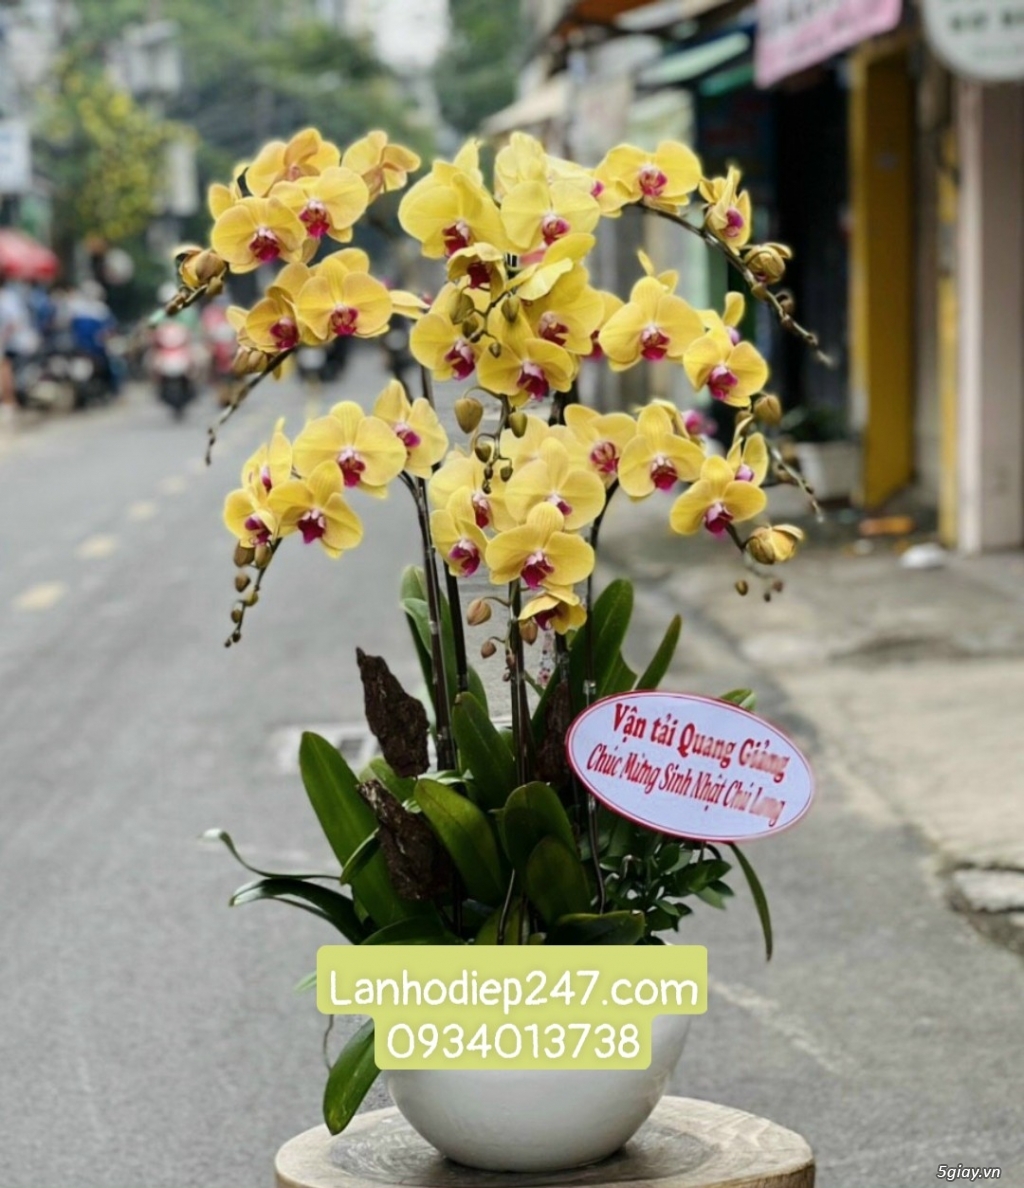 Mua Lan Hồ Điệp cao cấp ở Sài Gòn - Shop hoa tươi 247 uy tín HÀNG ĐẦU - 13